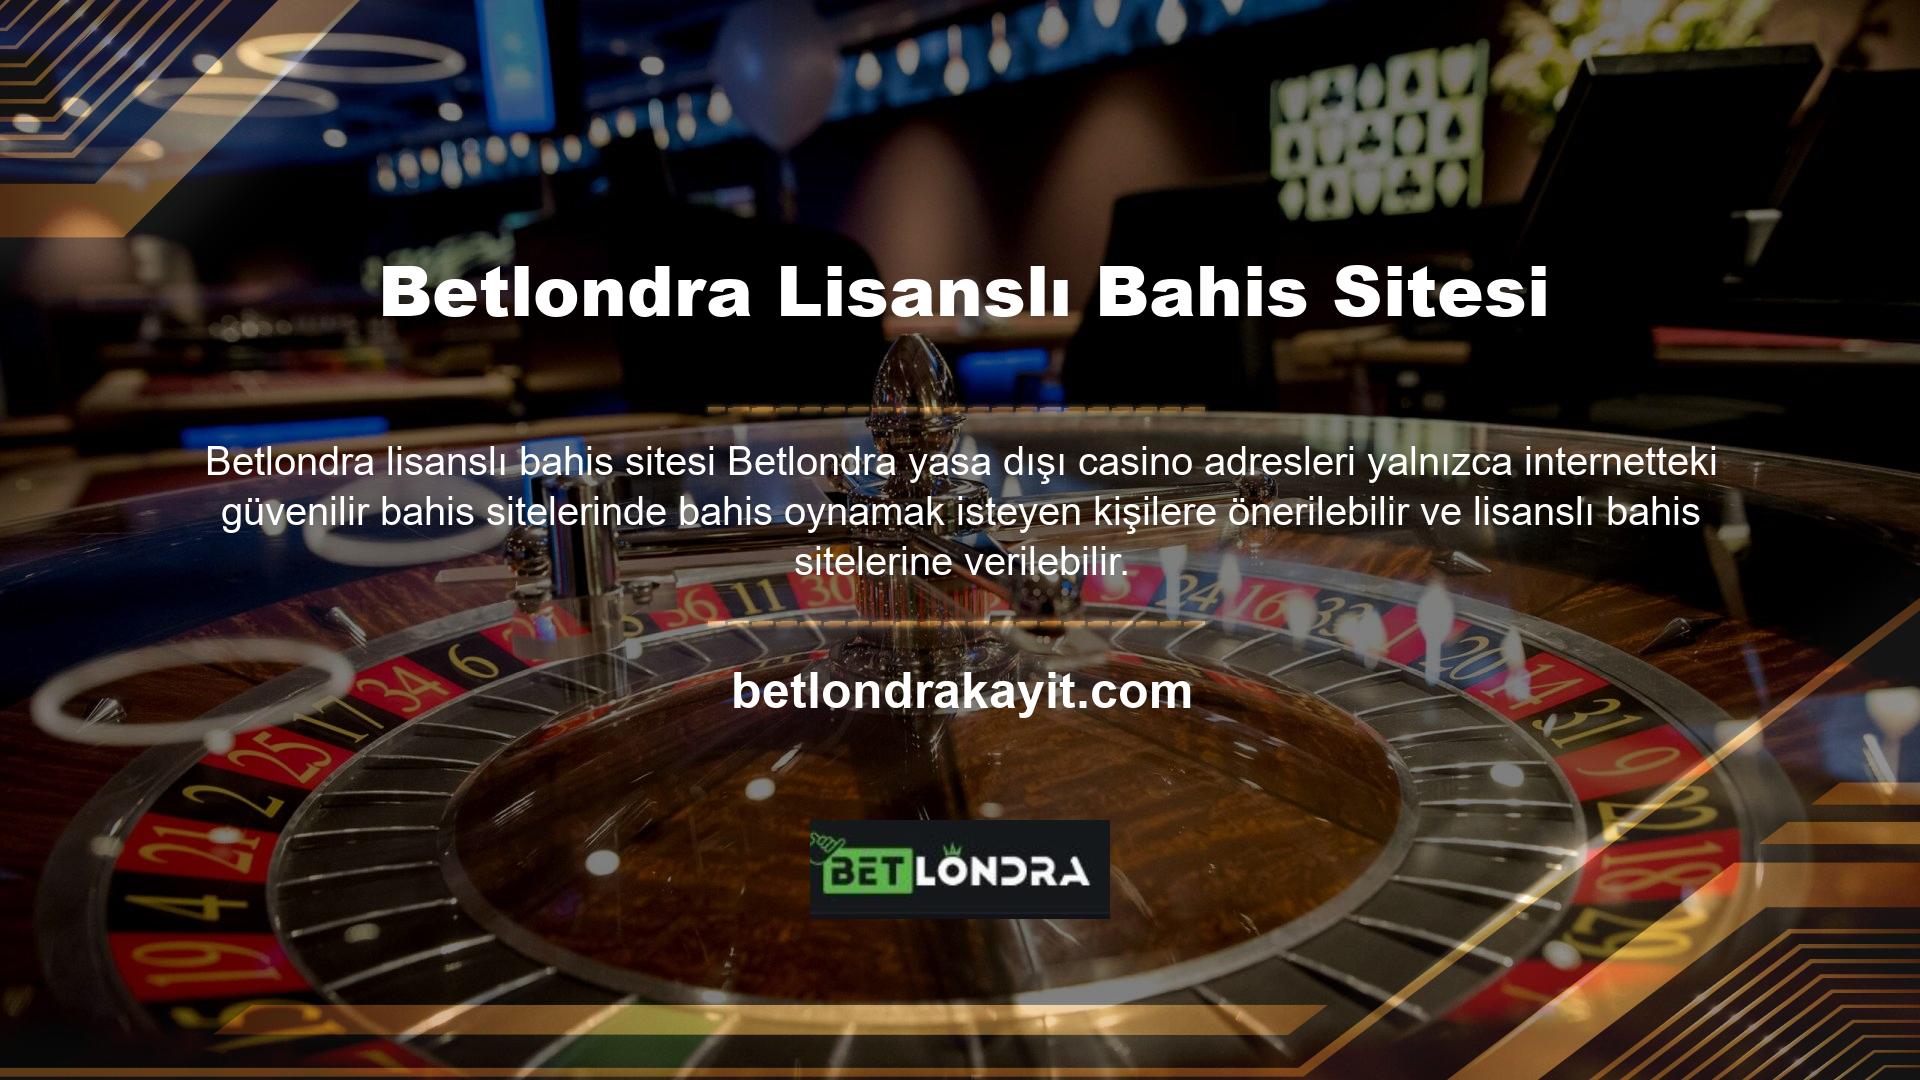 Betlondra yasa dışı casino sitesi lisansı hakkında bilgi verdikten sonra çok tuhaf bir soru daha ortaya çıktı